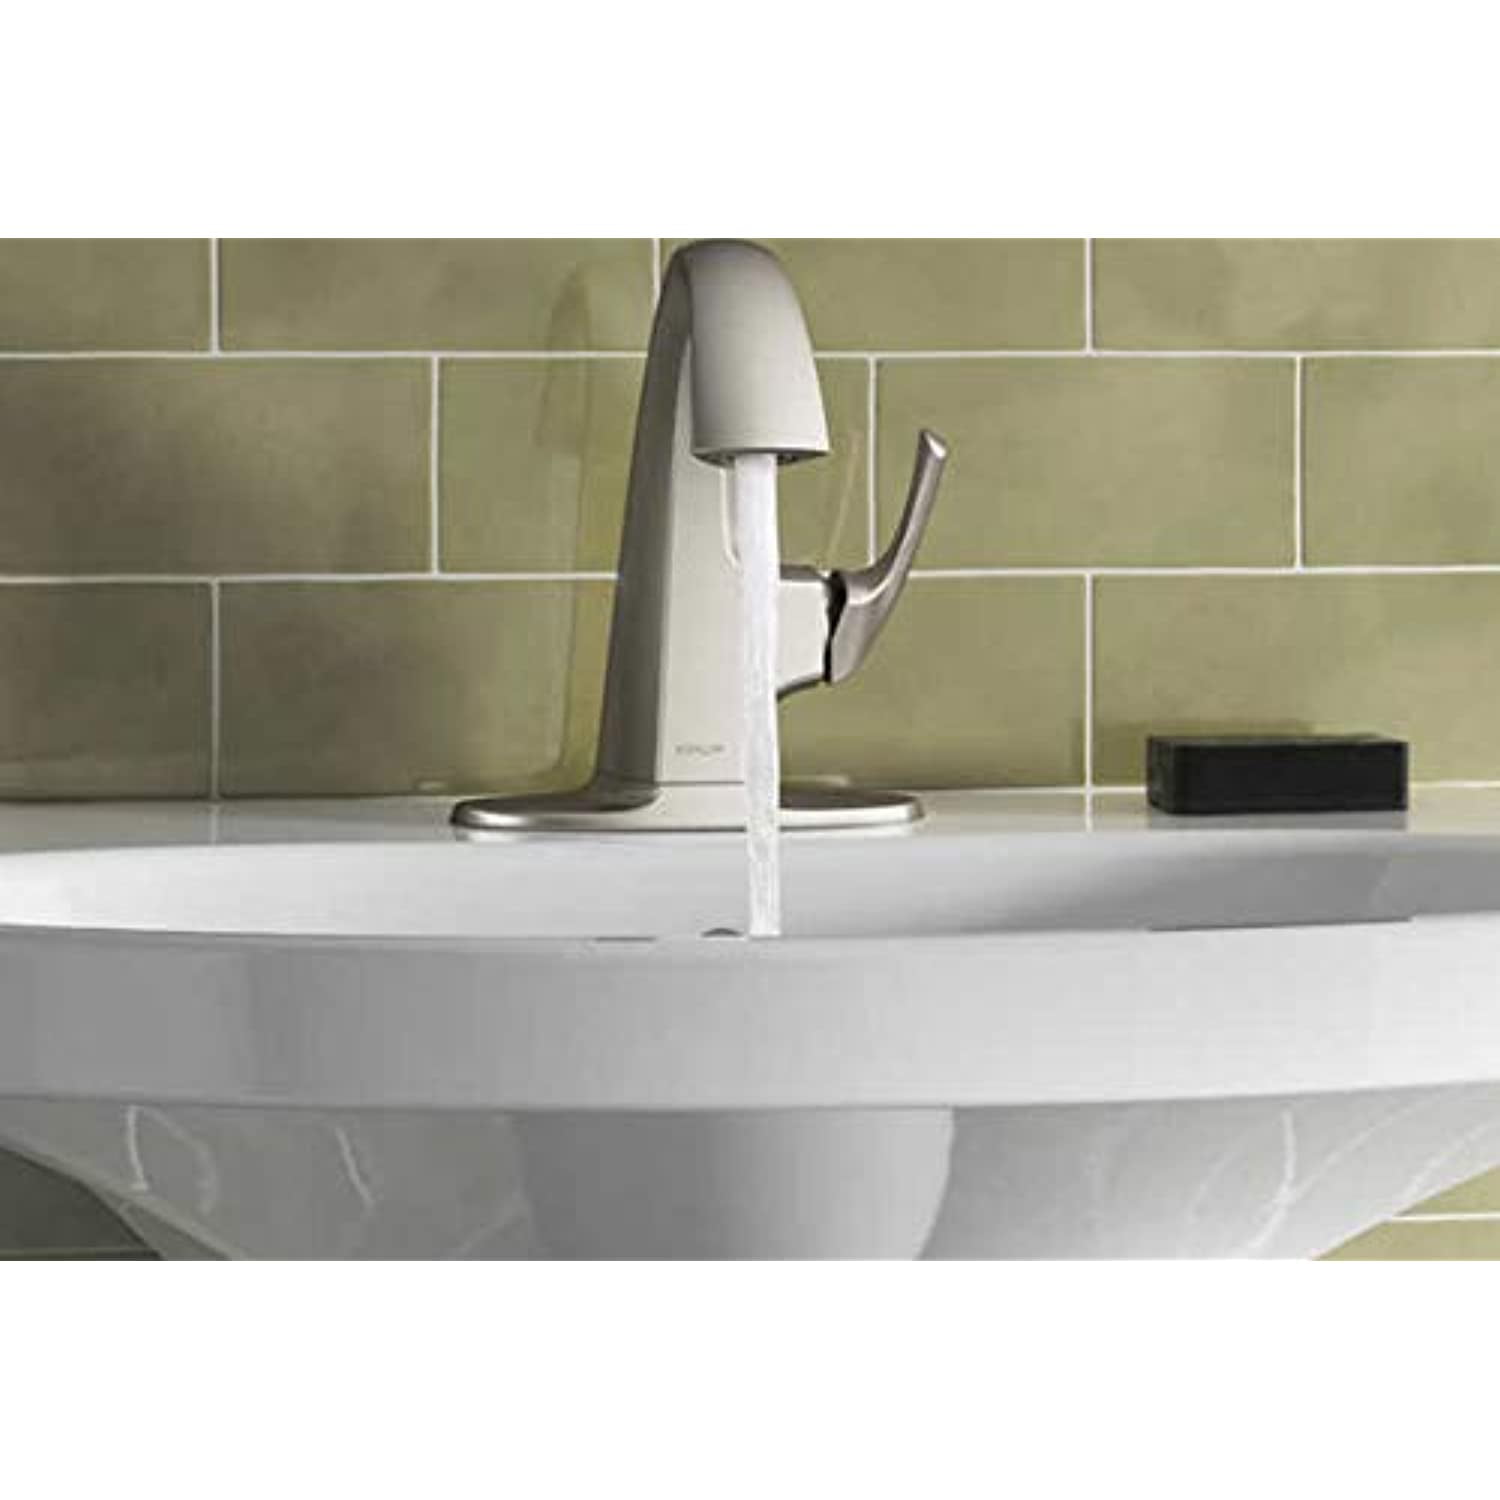 Kohler Aderlee Vibrant Brushed Nickel Bathroom Sink Faucet with Drain 